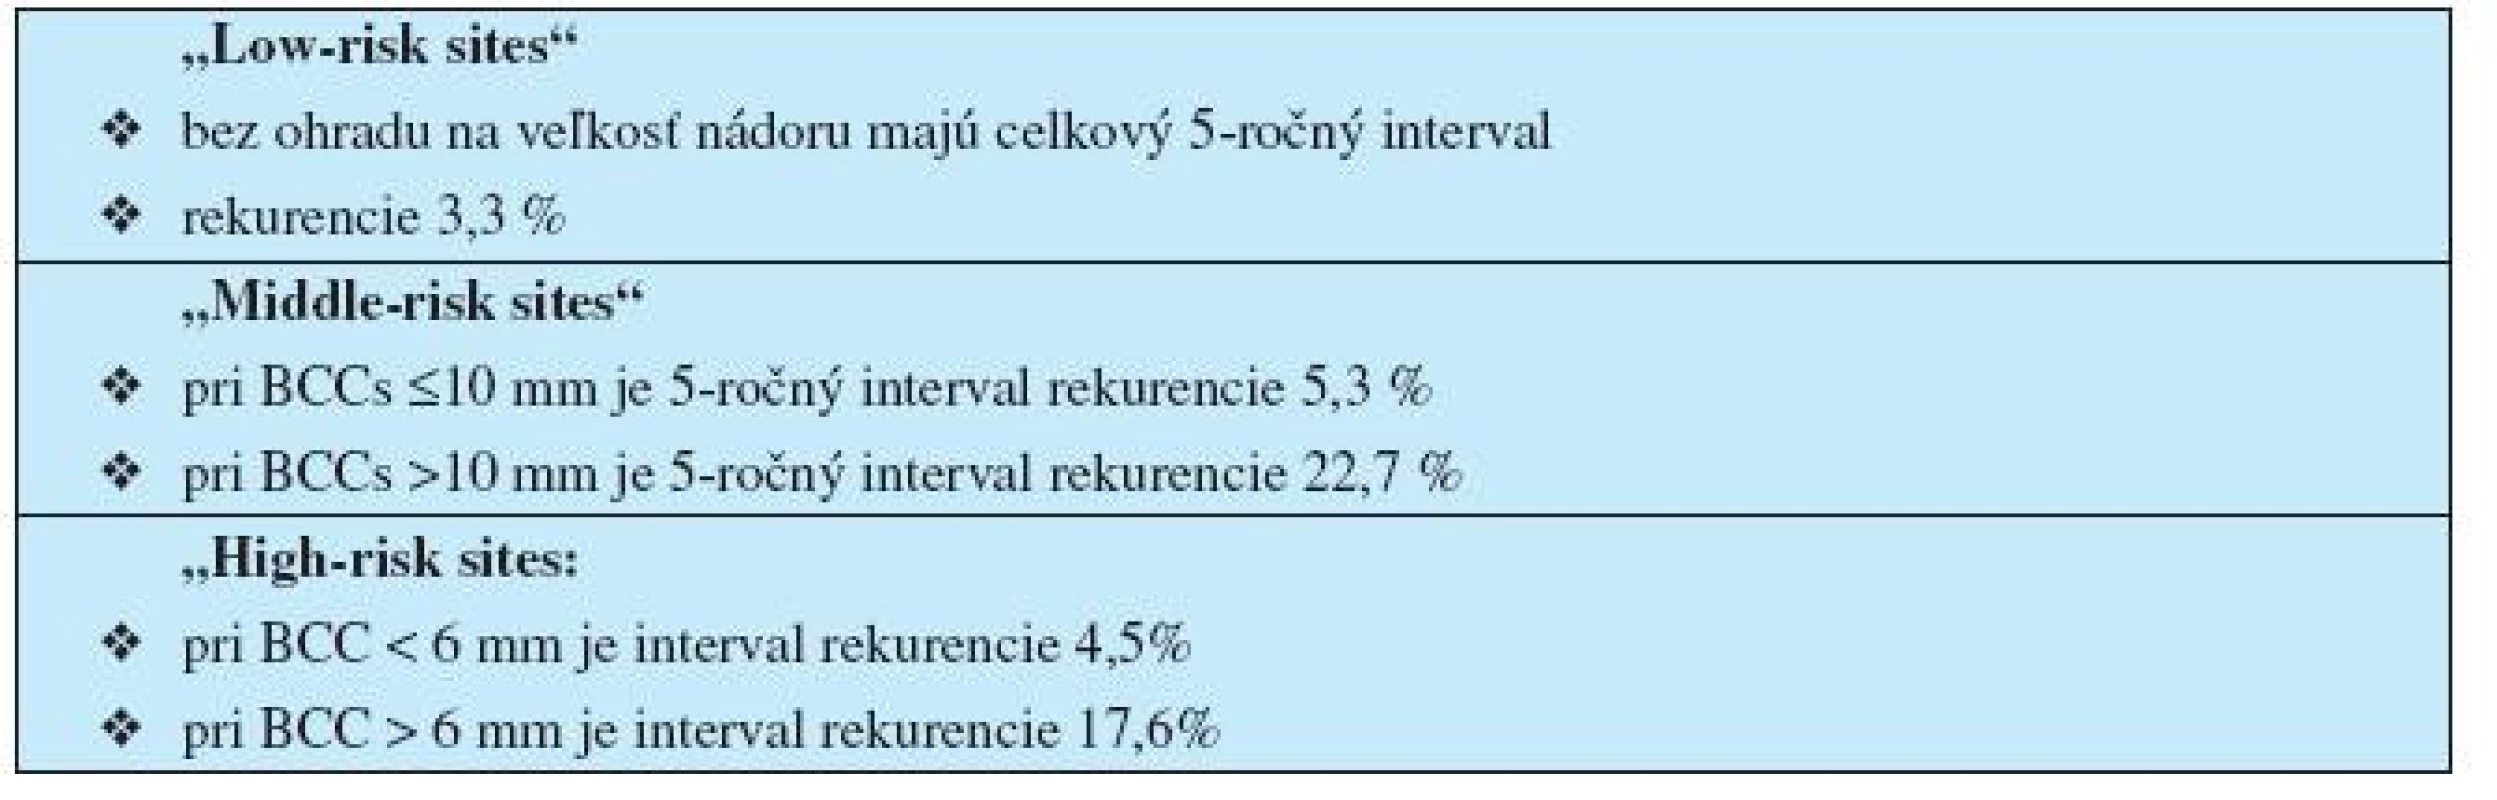 Pravdepodobnosť rizika recidívy BCC po odstránení kyretážou a elektrokauterizáciou v závislosti od lokality a rozmerov nádoru (z ref. č. 40)